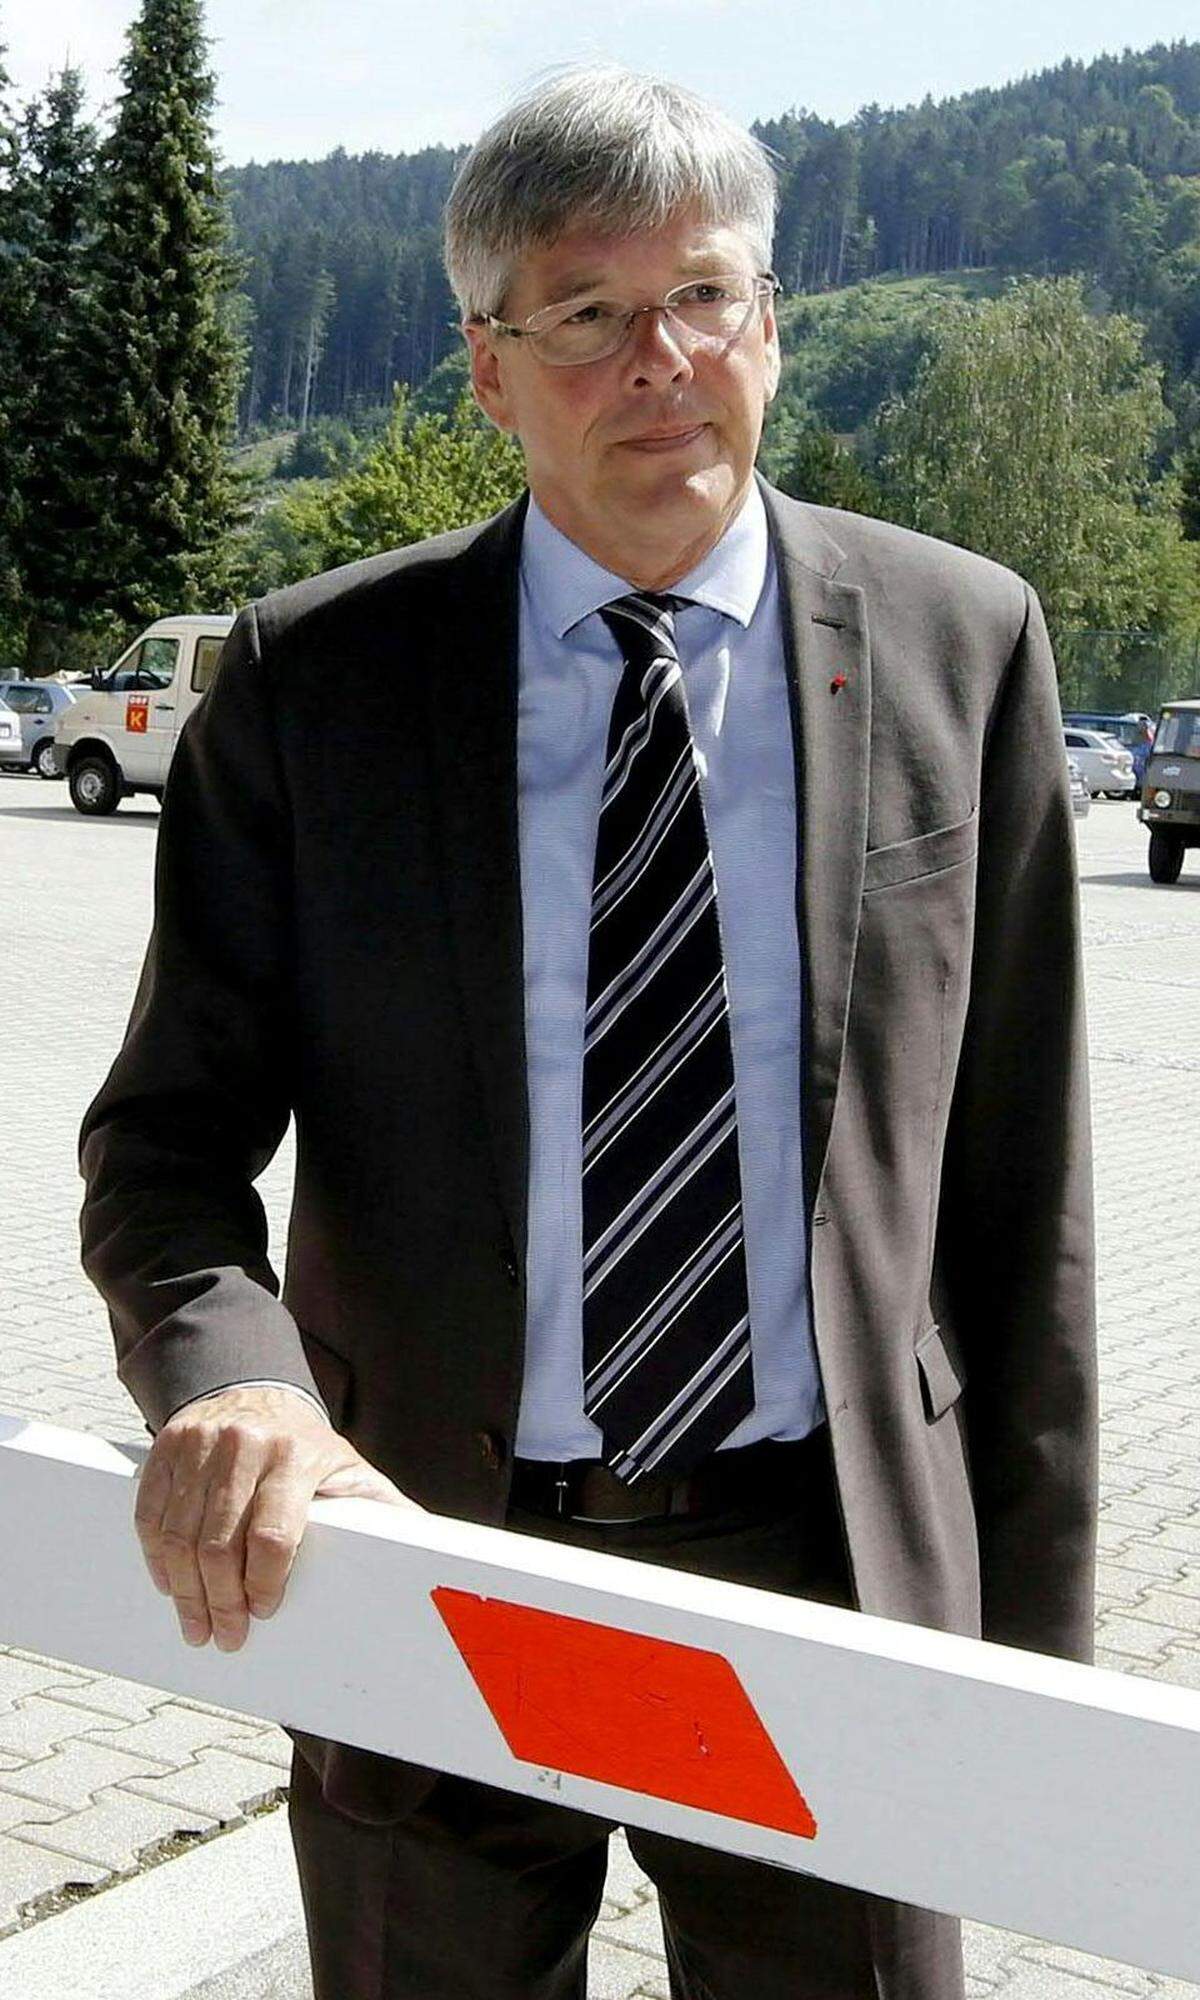 Peter Kaiser wurde am 4. Dezember 1958 in Klagenfurt geboren. Nach der Matura 1977 war er Vertragsbediensteter des Landes Kärnten. In die Politik kam Kaiser über die Sozialistische Jugend. Er zog bereits 1989 erstmals in das Landesparlament ein, wo er eine Periode als Jugendsprecher fungierte. 1996 war er SPÖ-Spitzenkandidat für die Europawahl, seit 2001 ist er wieder Landtagsabgeordneter, im Oktober 2005 wurde er Klubobmann, 2008 Landesrat. Knapp drei Jahre als Landeshauptmann-Stellvertreter folgten, bis der Wahlsieg im März 2013 ihn ganz nach oben brachte.